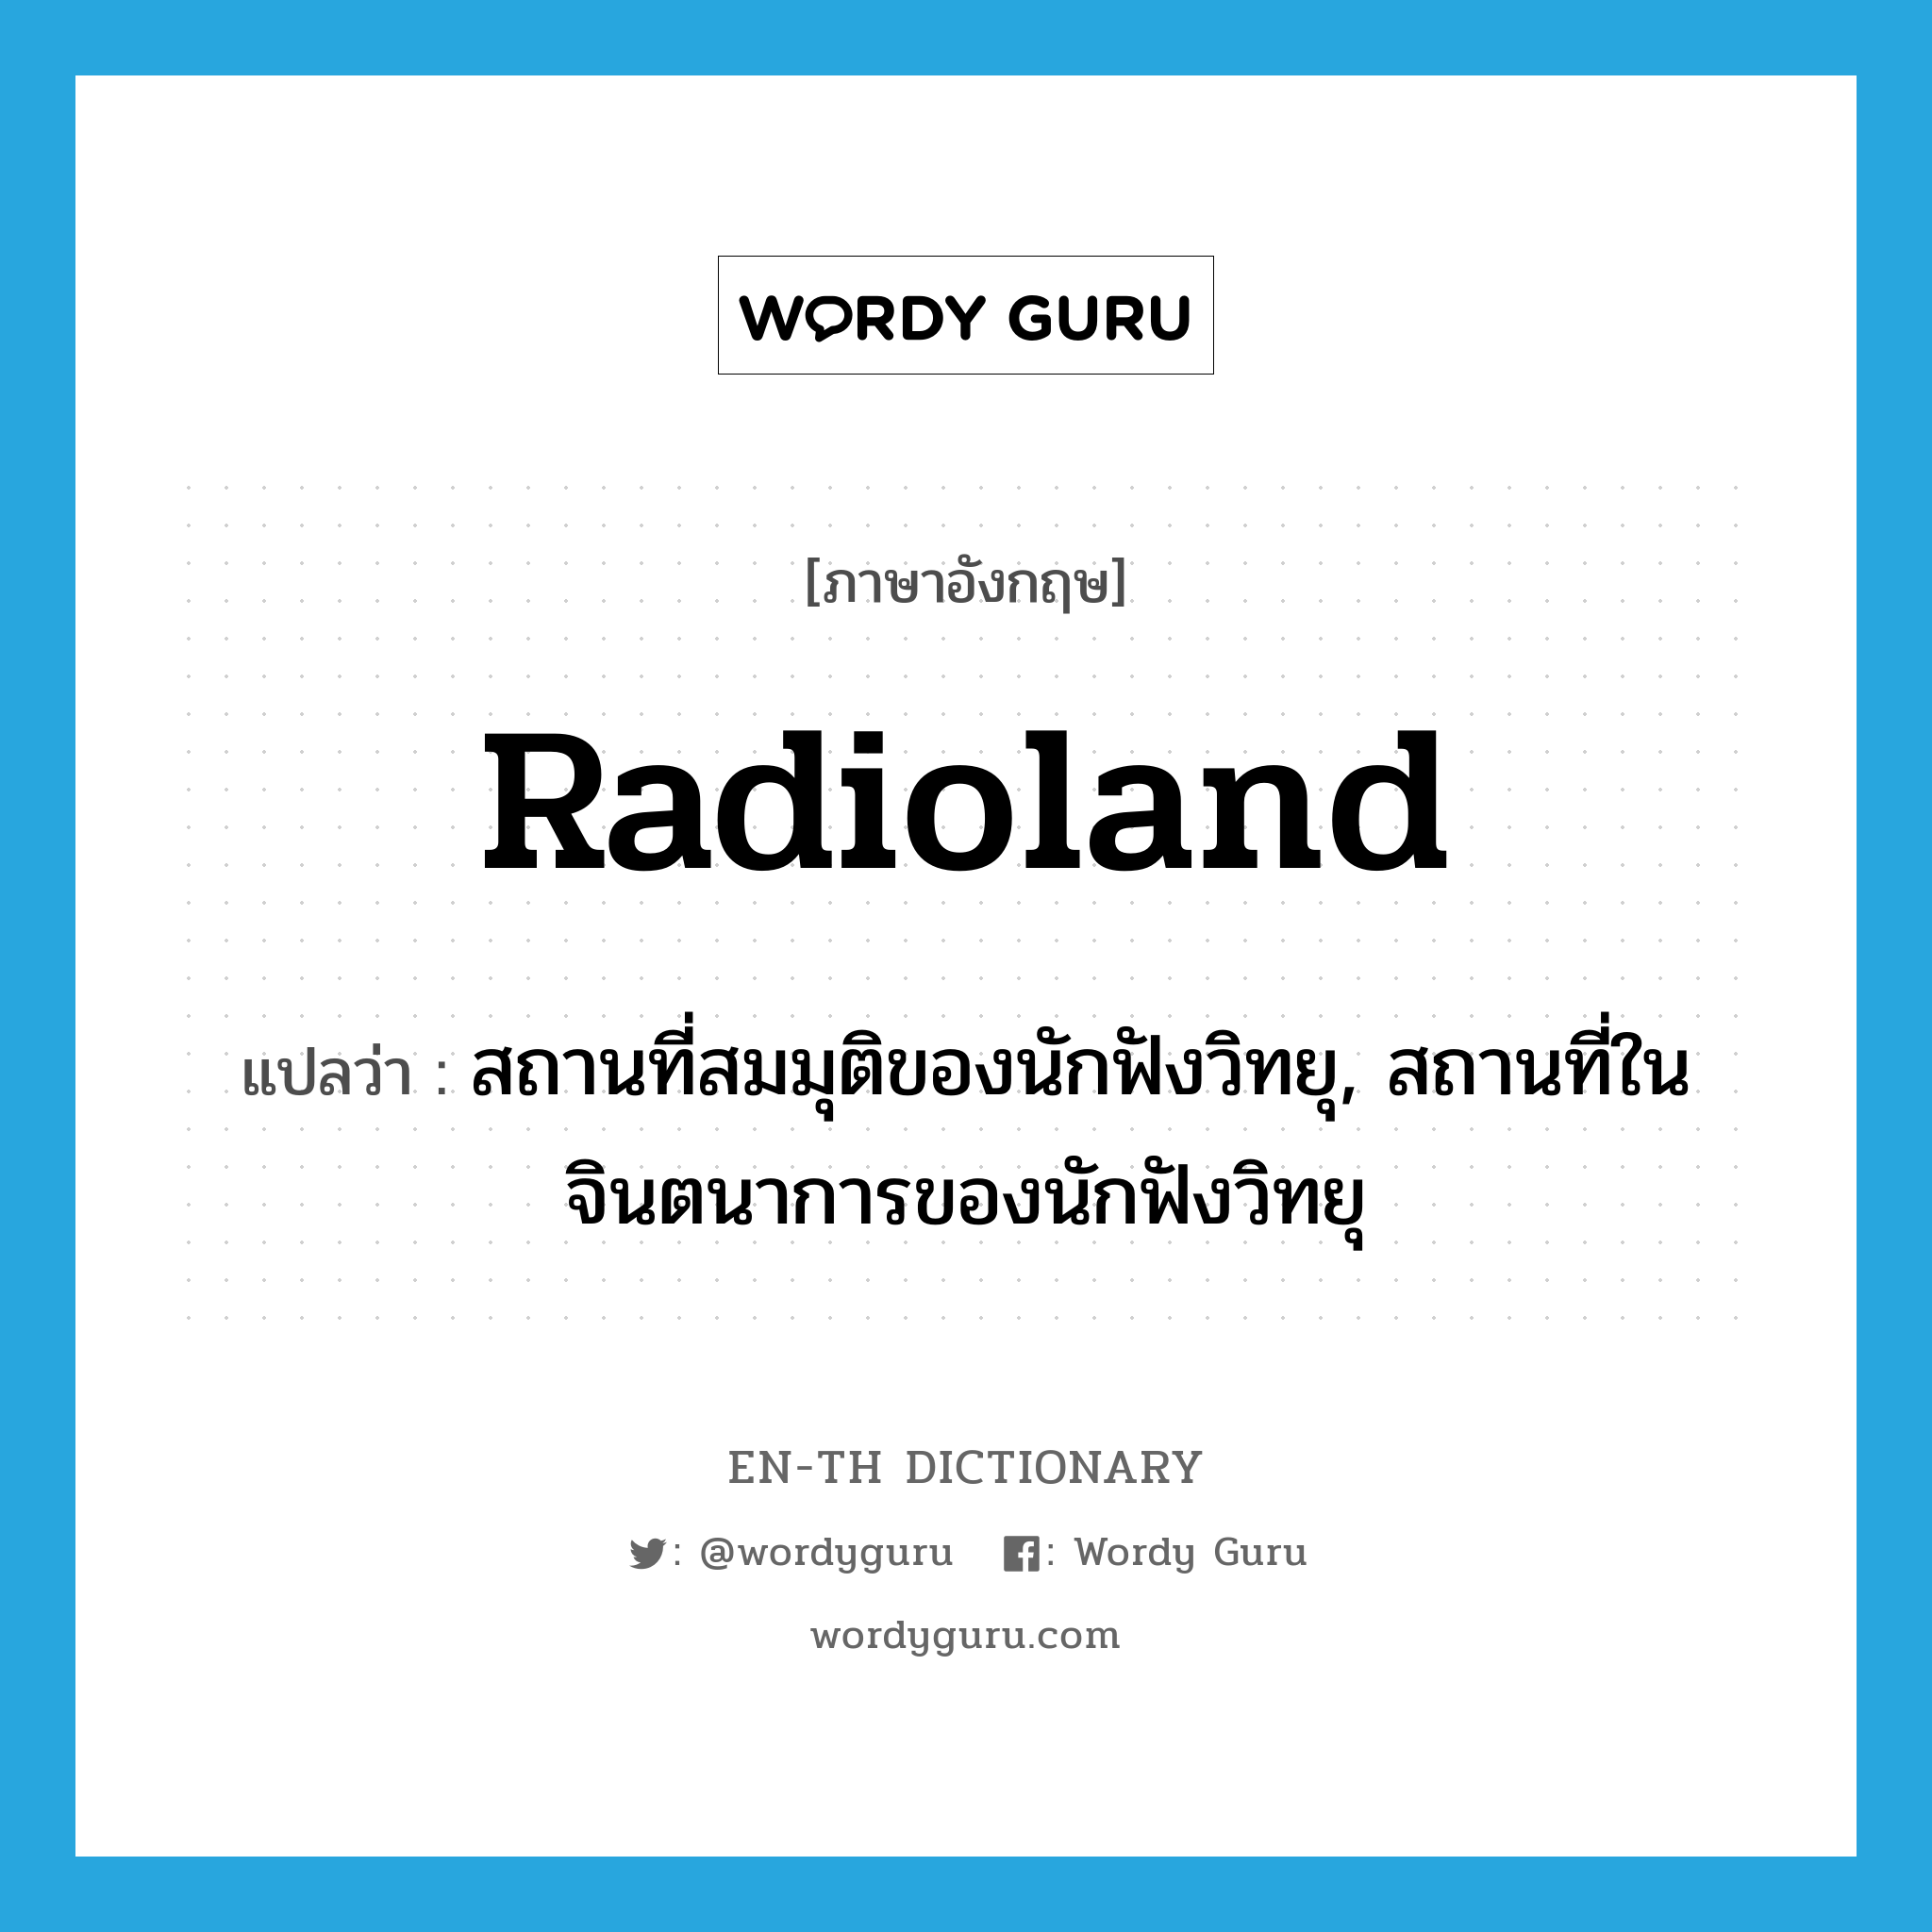 radioland แปลว่า?, คำศัพท์ภาษาอังกฤษ radioland แปลว่า สถานที่สมมุติของนักฟังวิทยุ, สถานที่ในจินตนาการของนักฟังวิทยุ ประเภท SL หมวด SL